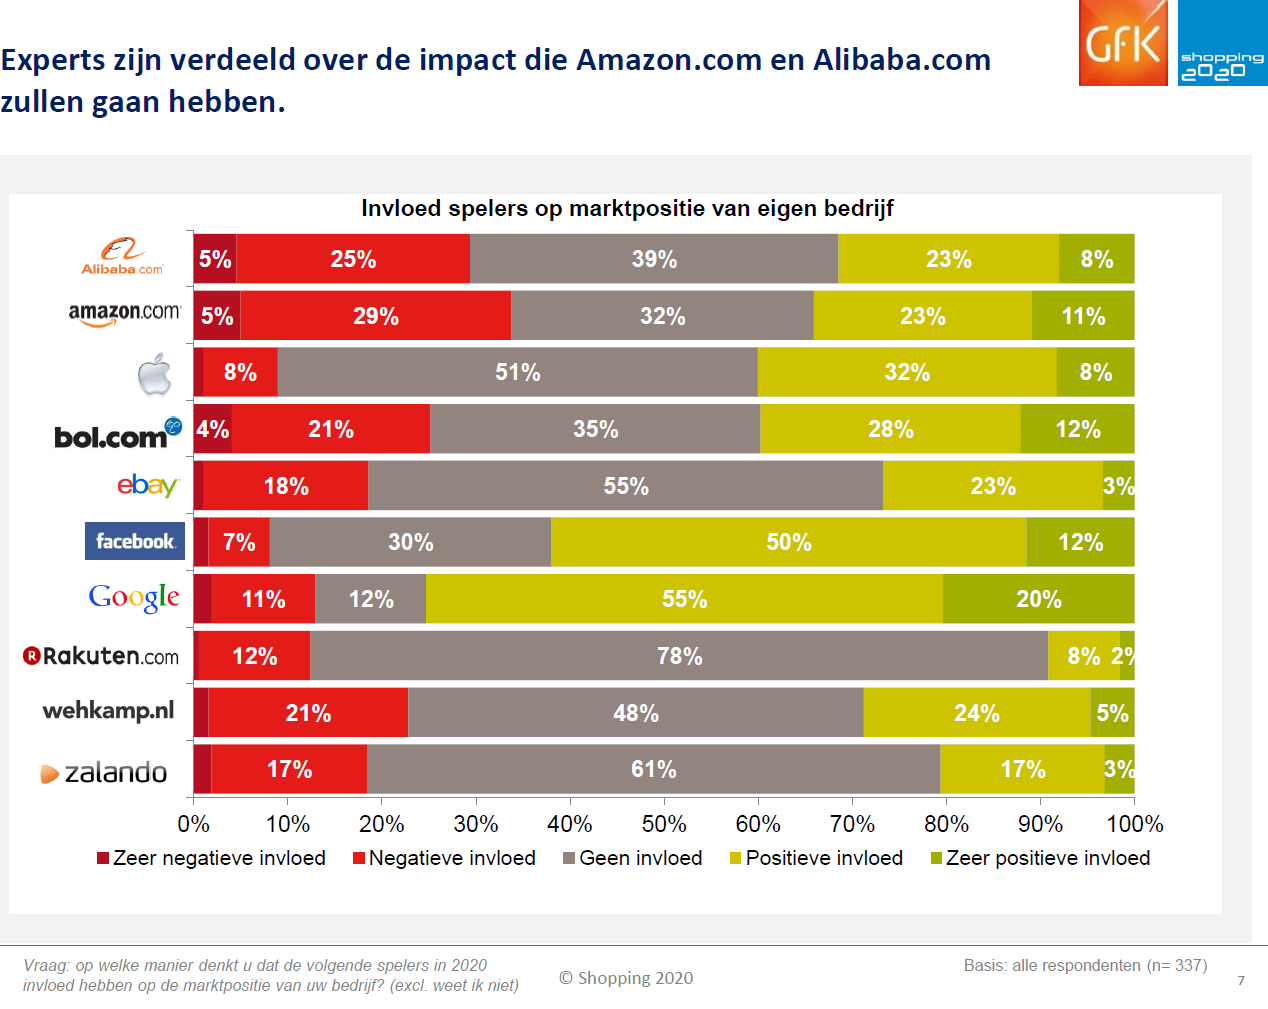 Ongeveer een derde van de experts geeft aan de ontwikkelingen van met name Amazon en Alibaba als bedreigend te ervaren voor hun bedrijf. In mindere mate geldt dit ook voor Bol.com.